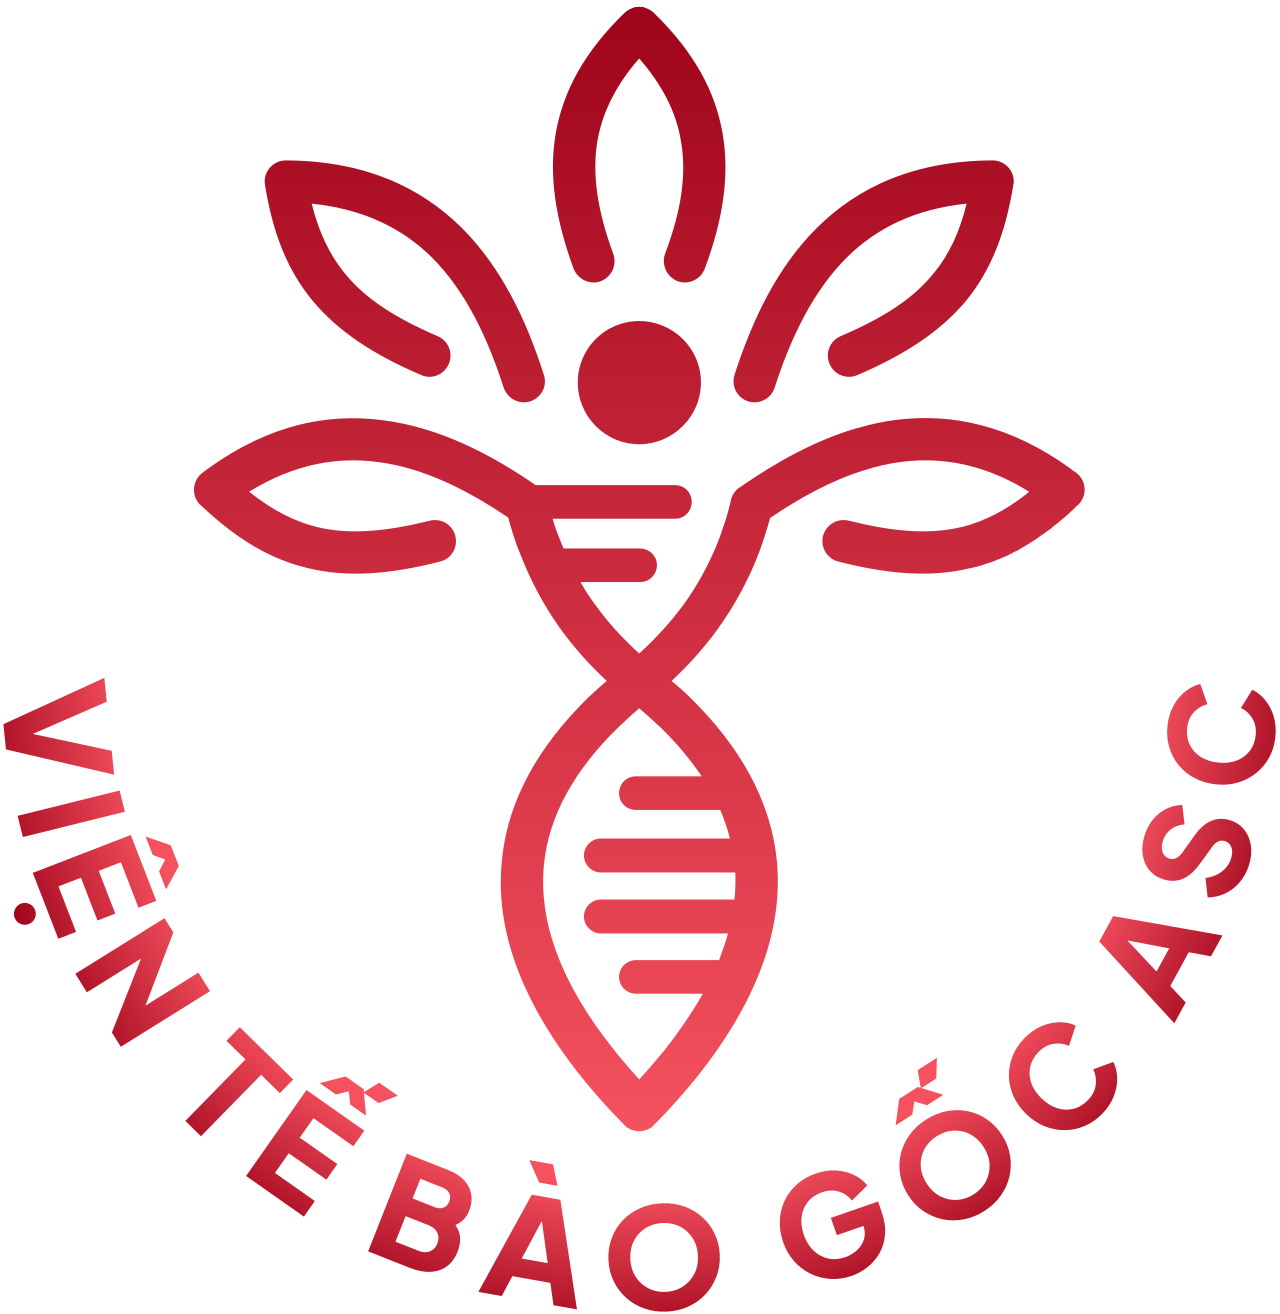 VIỆN TẾ BÀO GỐC ASC's logo